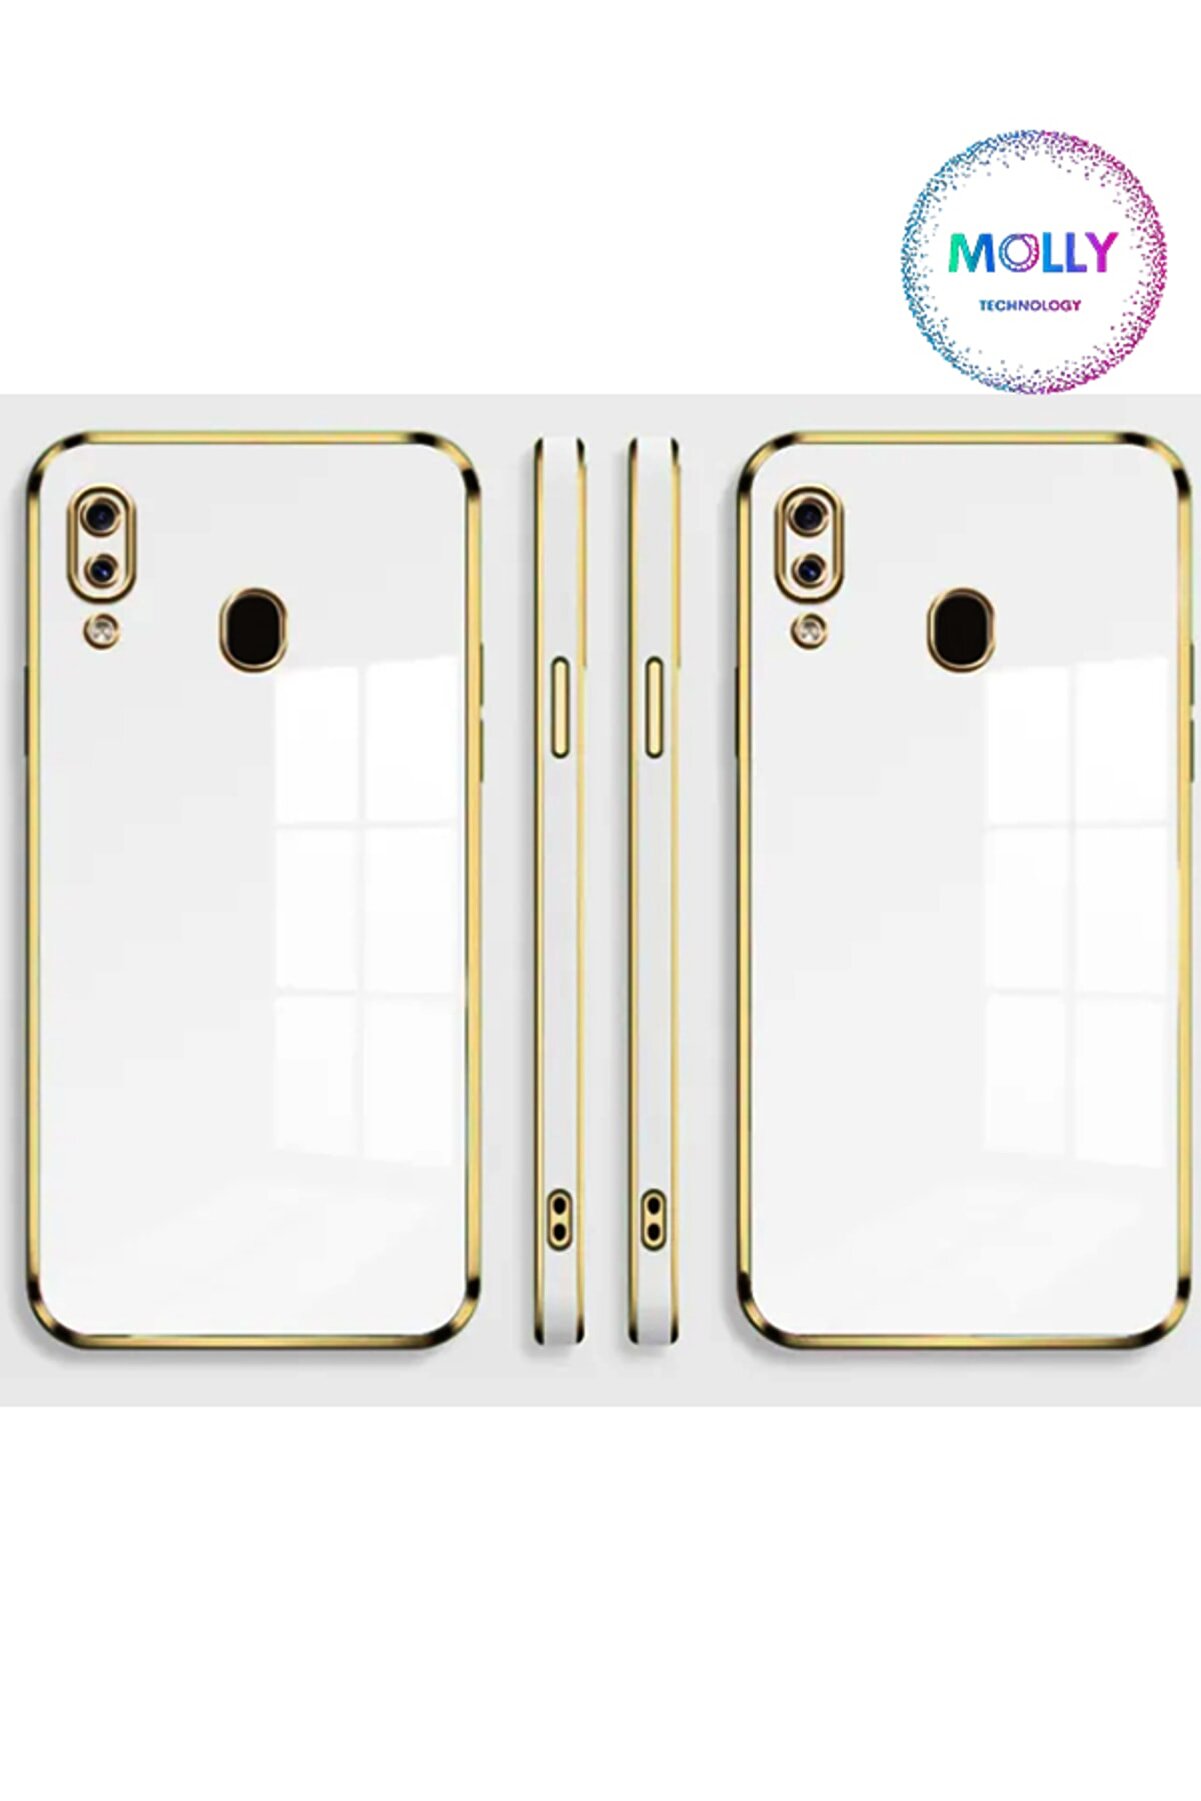 Molly Technology Huawei P20 Lite Için Inci Beyazı Kenarları Gold Detaylı Lüks Silikon Kılıf